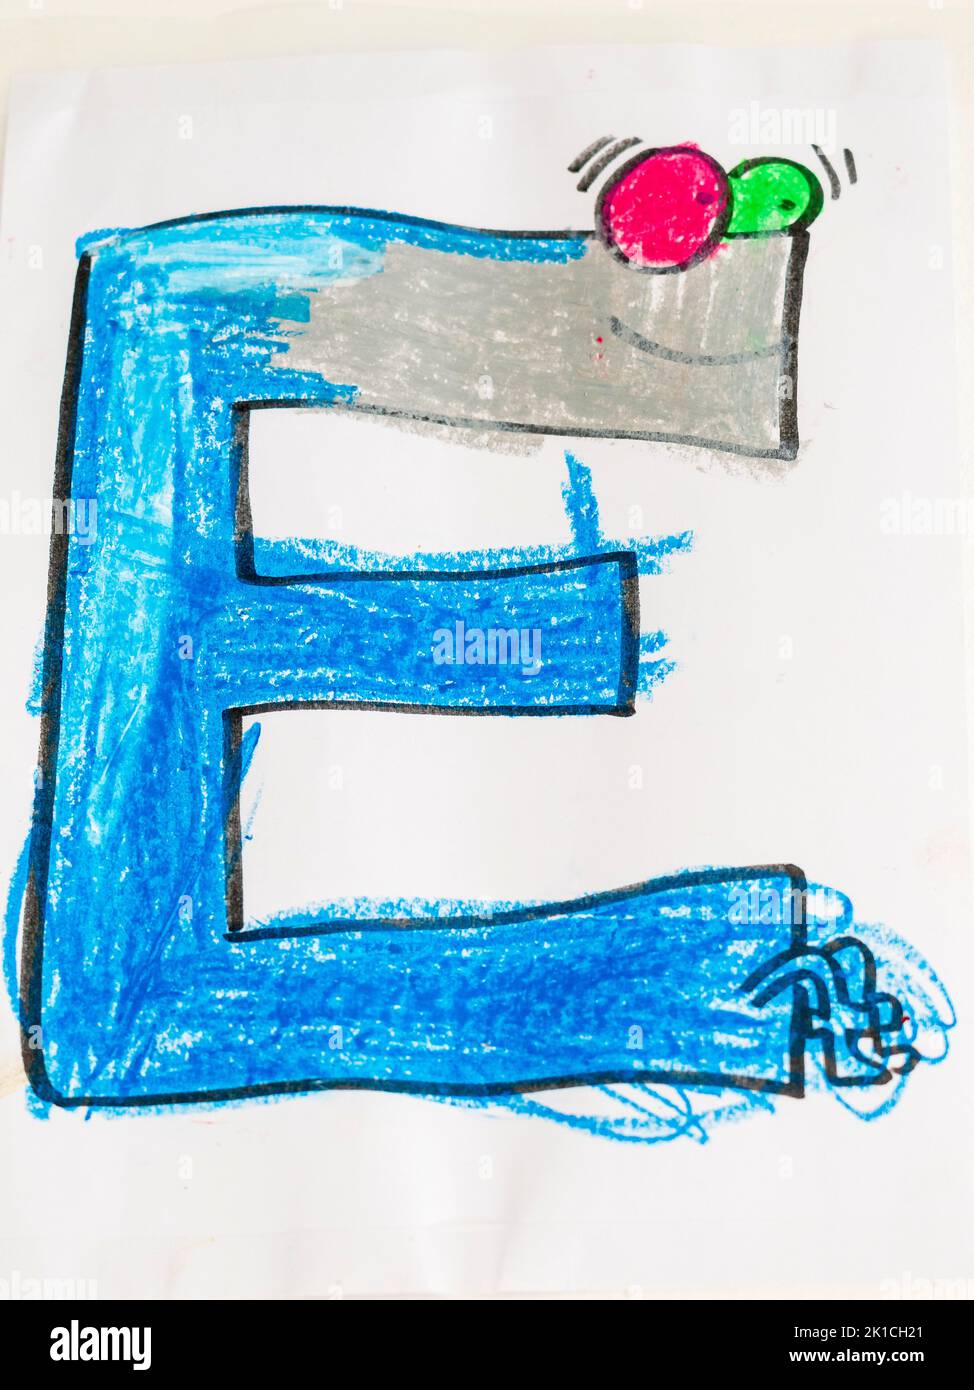 E letter, colored children's design letter, Majorca, Balearic Islands, Spain Stock Photo